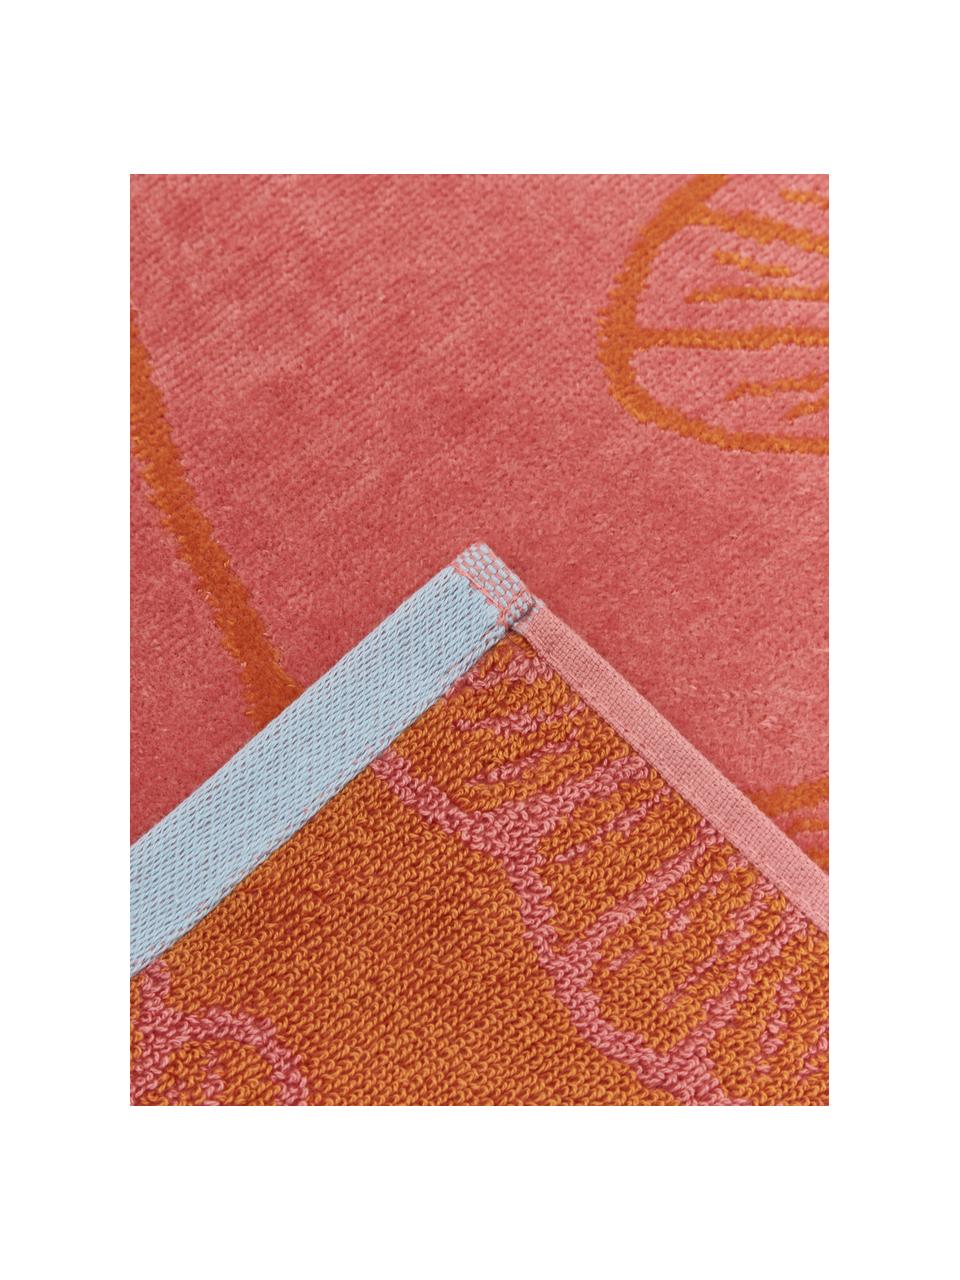 Serviette de plage pur coton rose orange Burnt Sky, 100 % coton, Rose, orange, larg. 100 x long. 180 cm